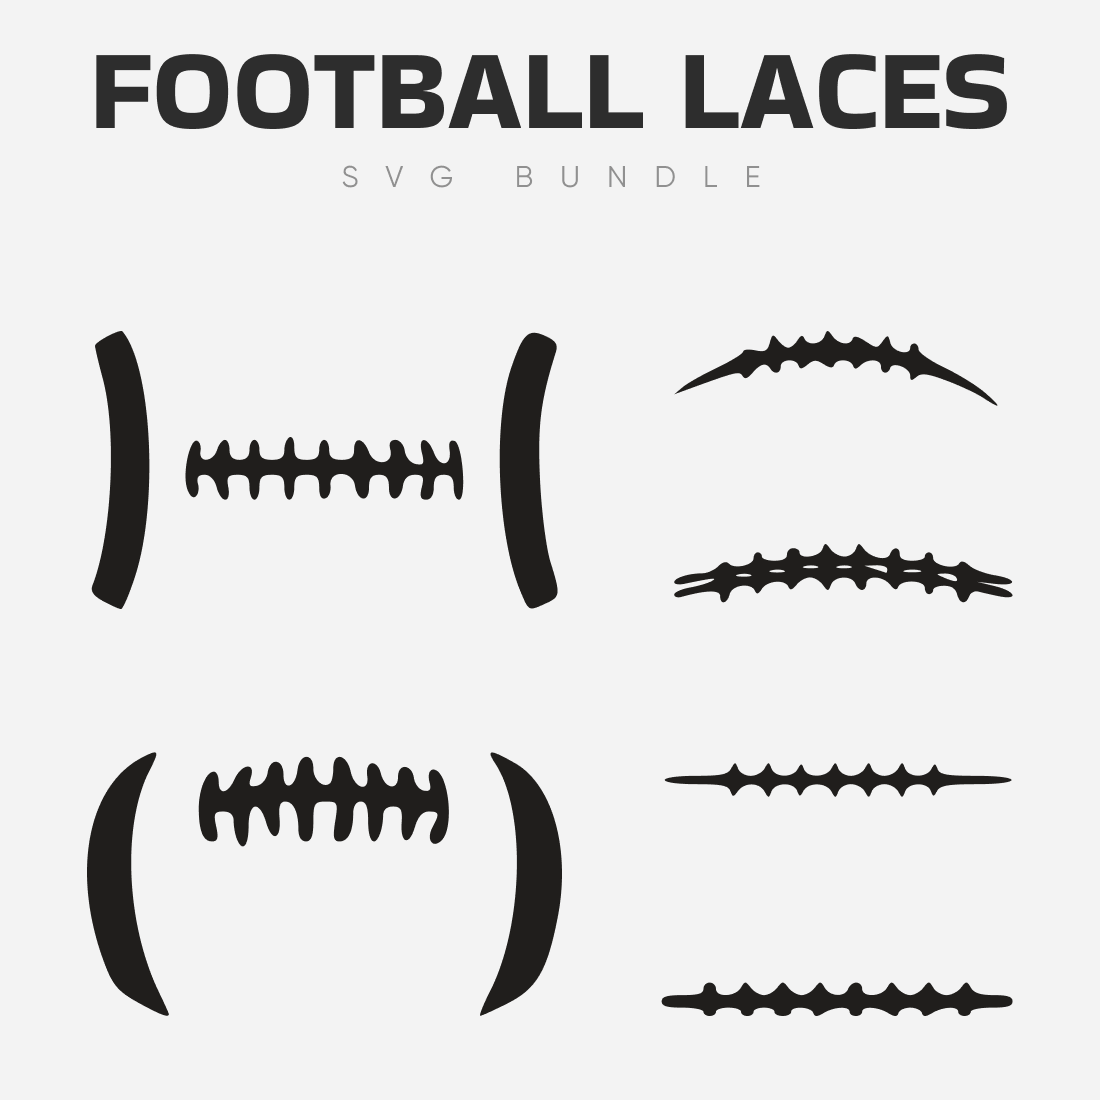 Varieties of Football Shoelaces SVG.